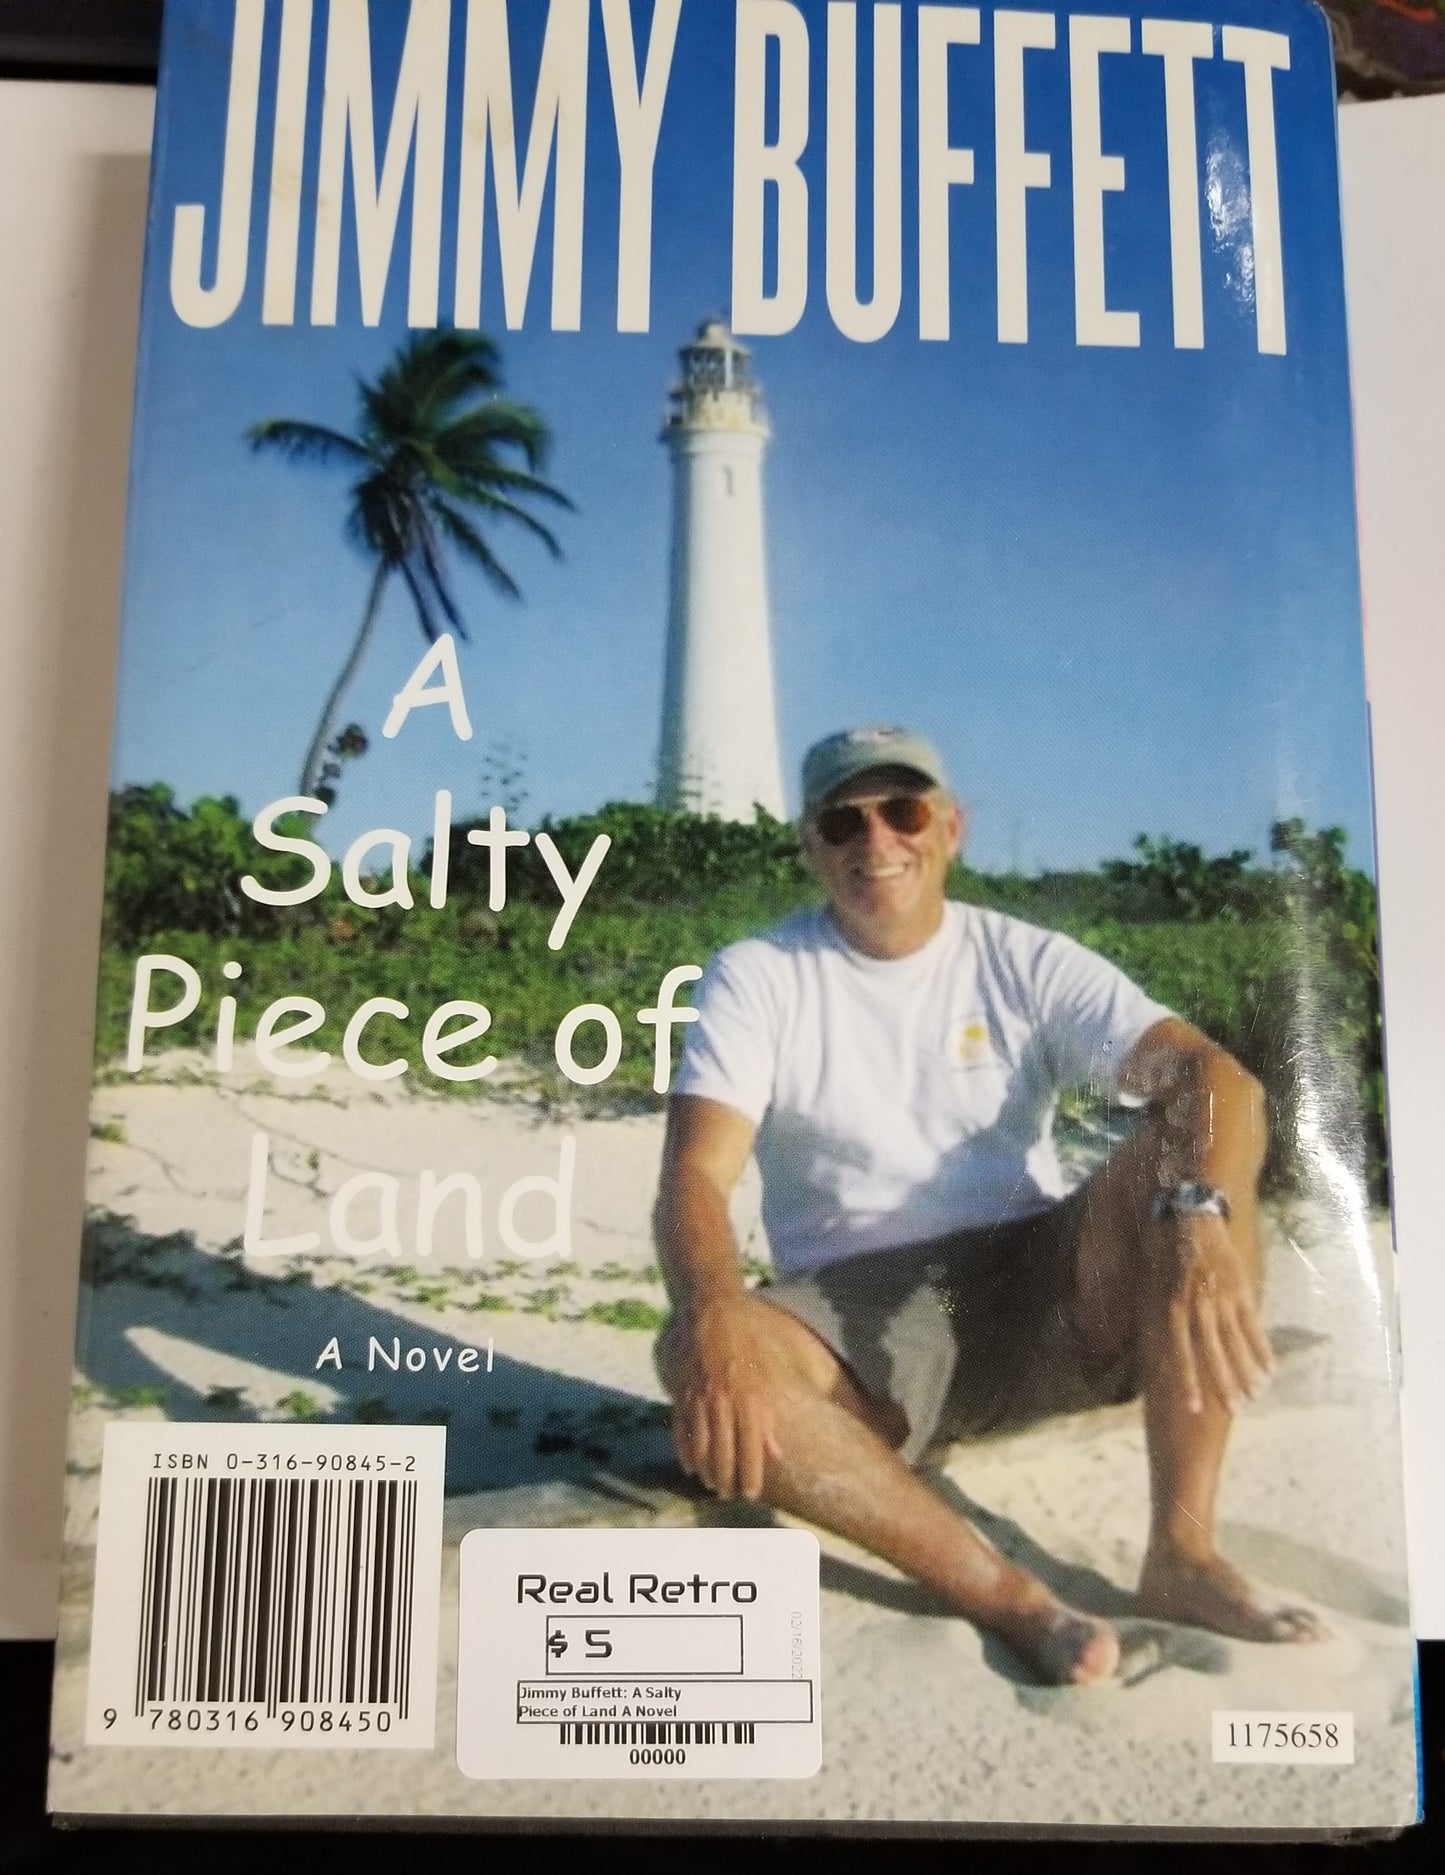 Jimmy Buffett "A Salty Piece of Land" A novel